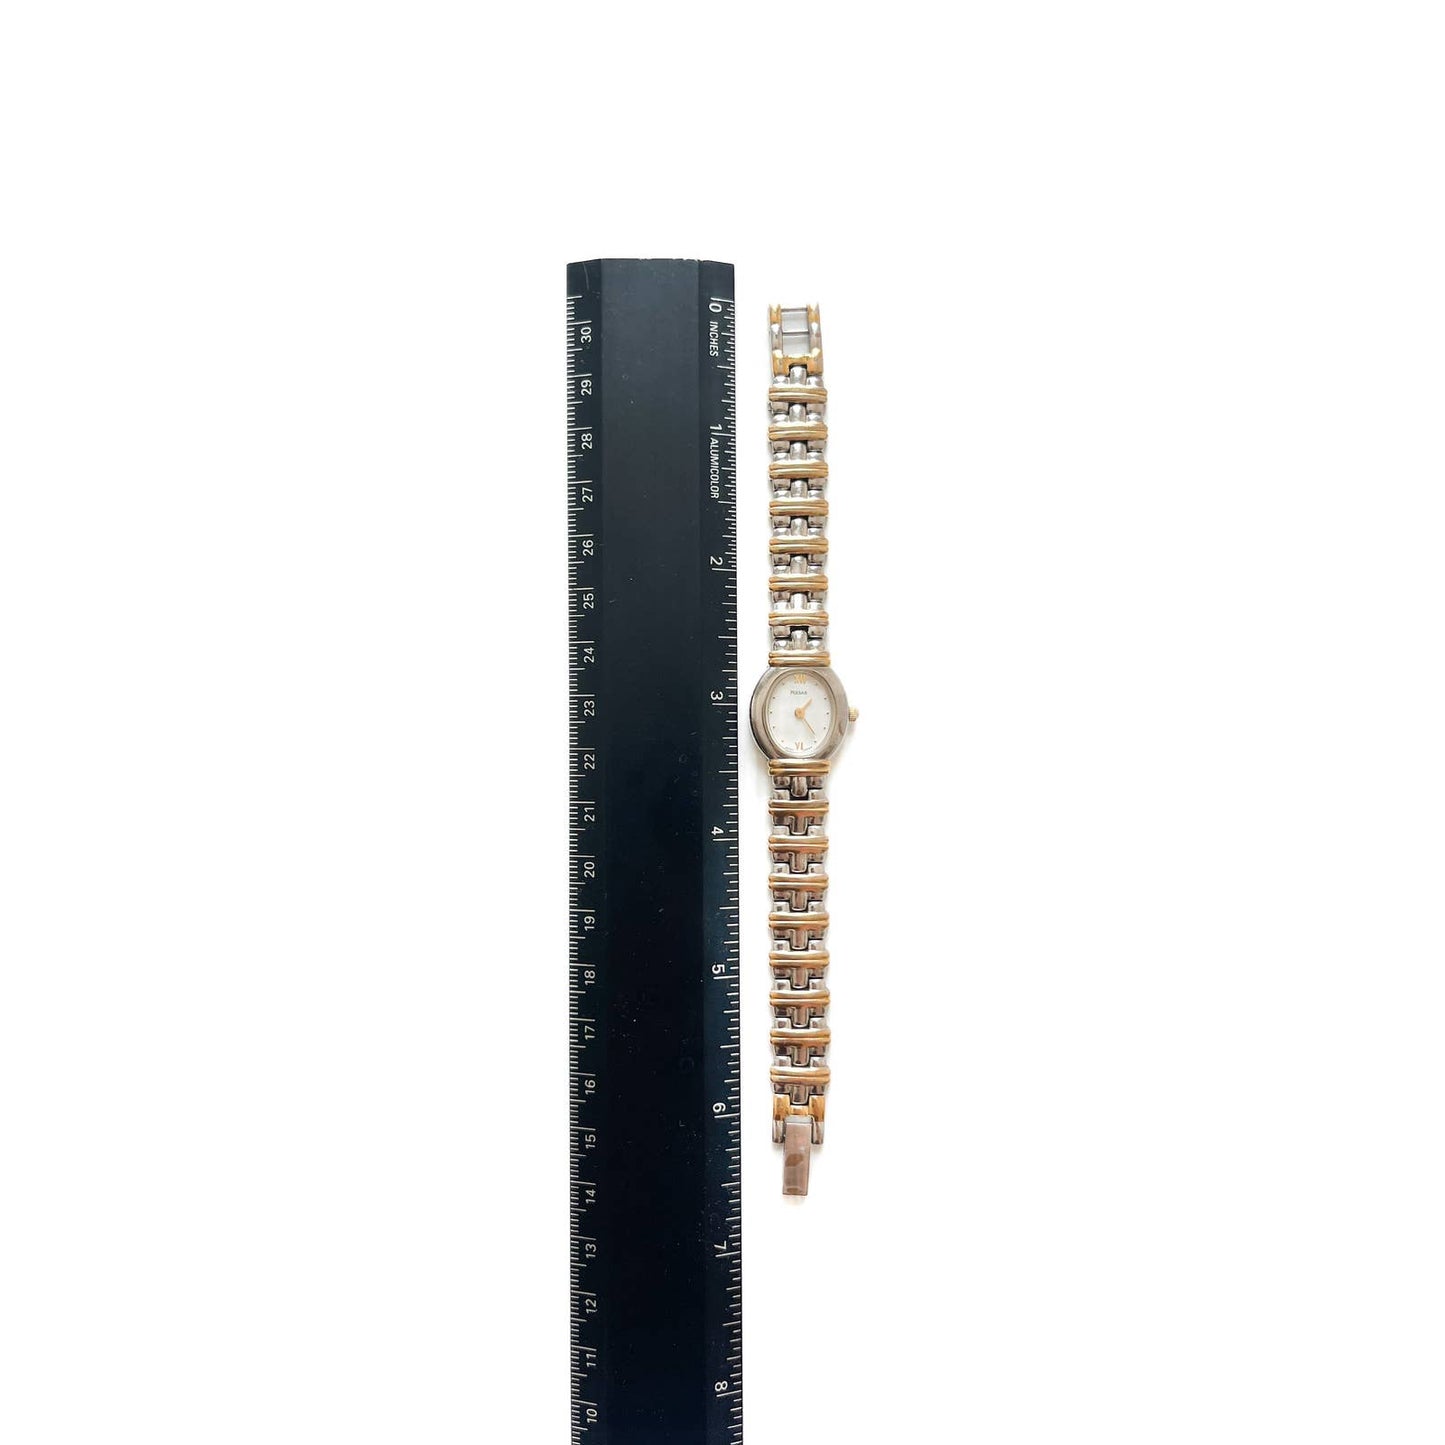 Vintage Two Tone Oval Bracelet Watch